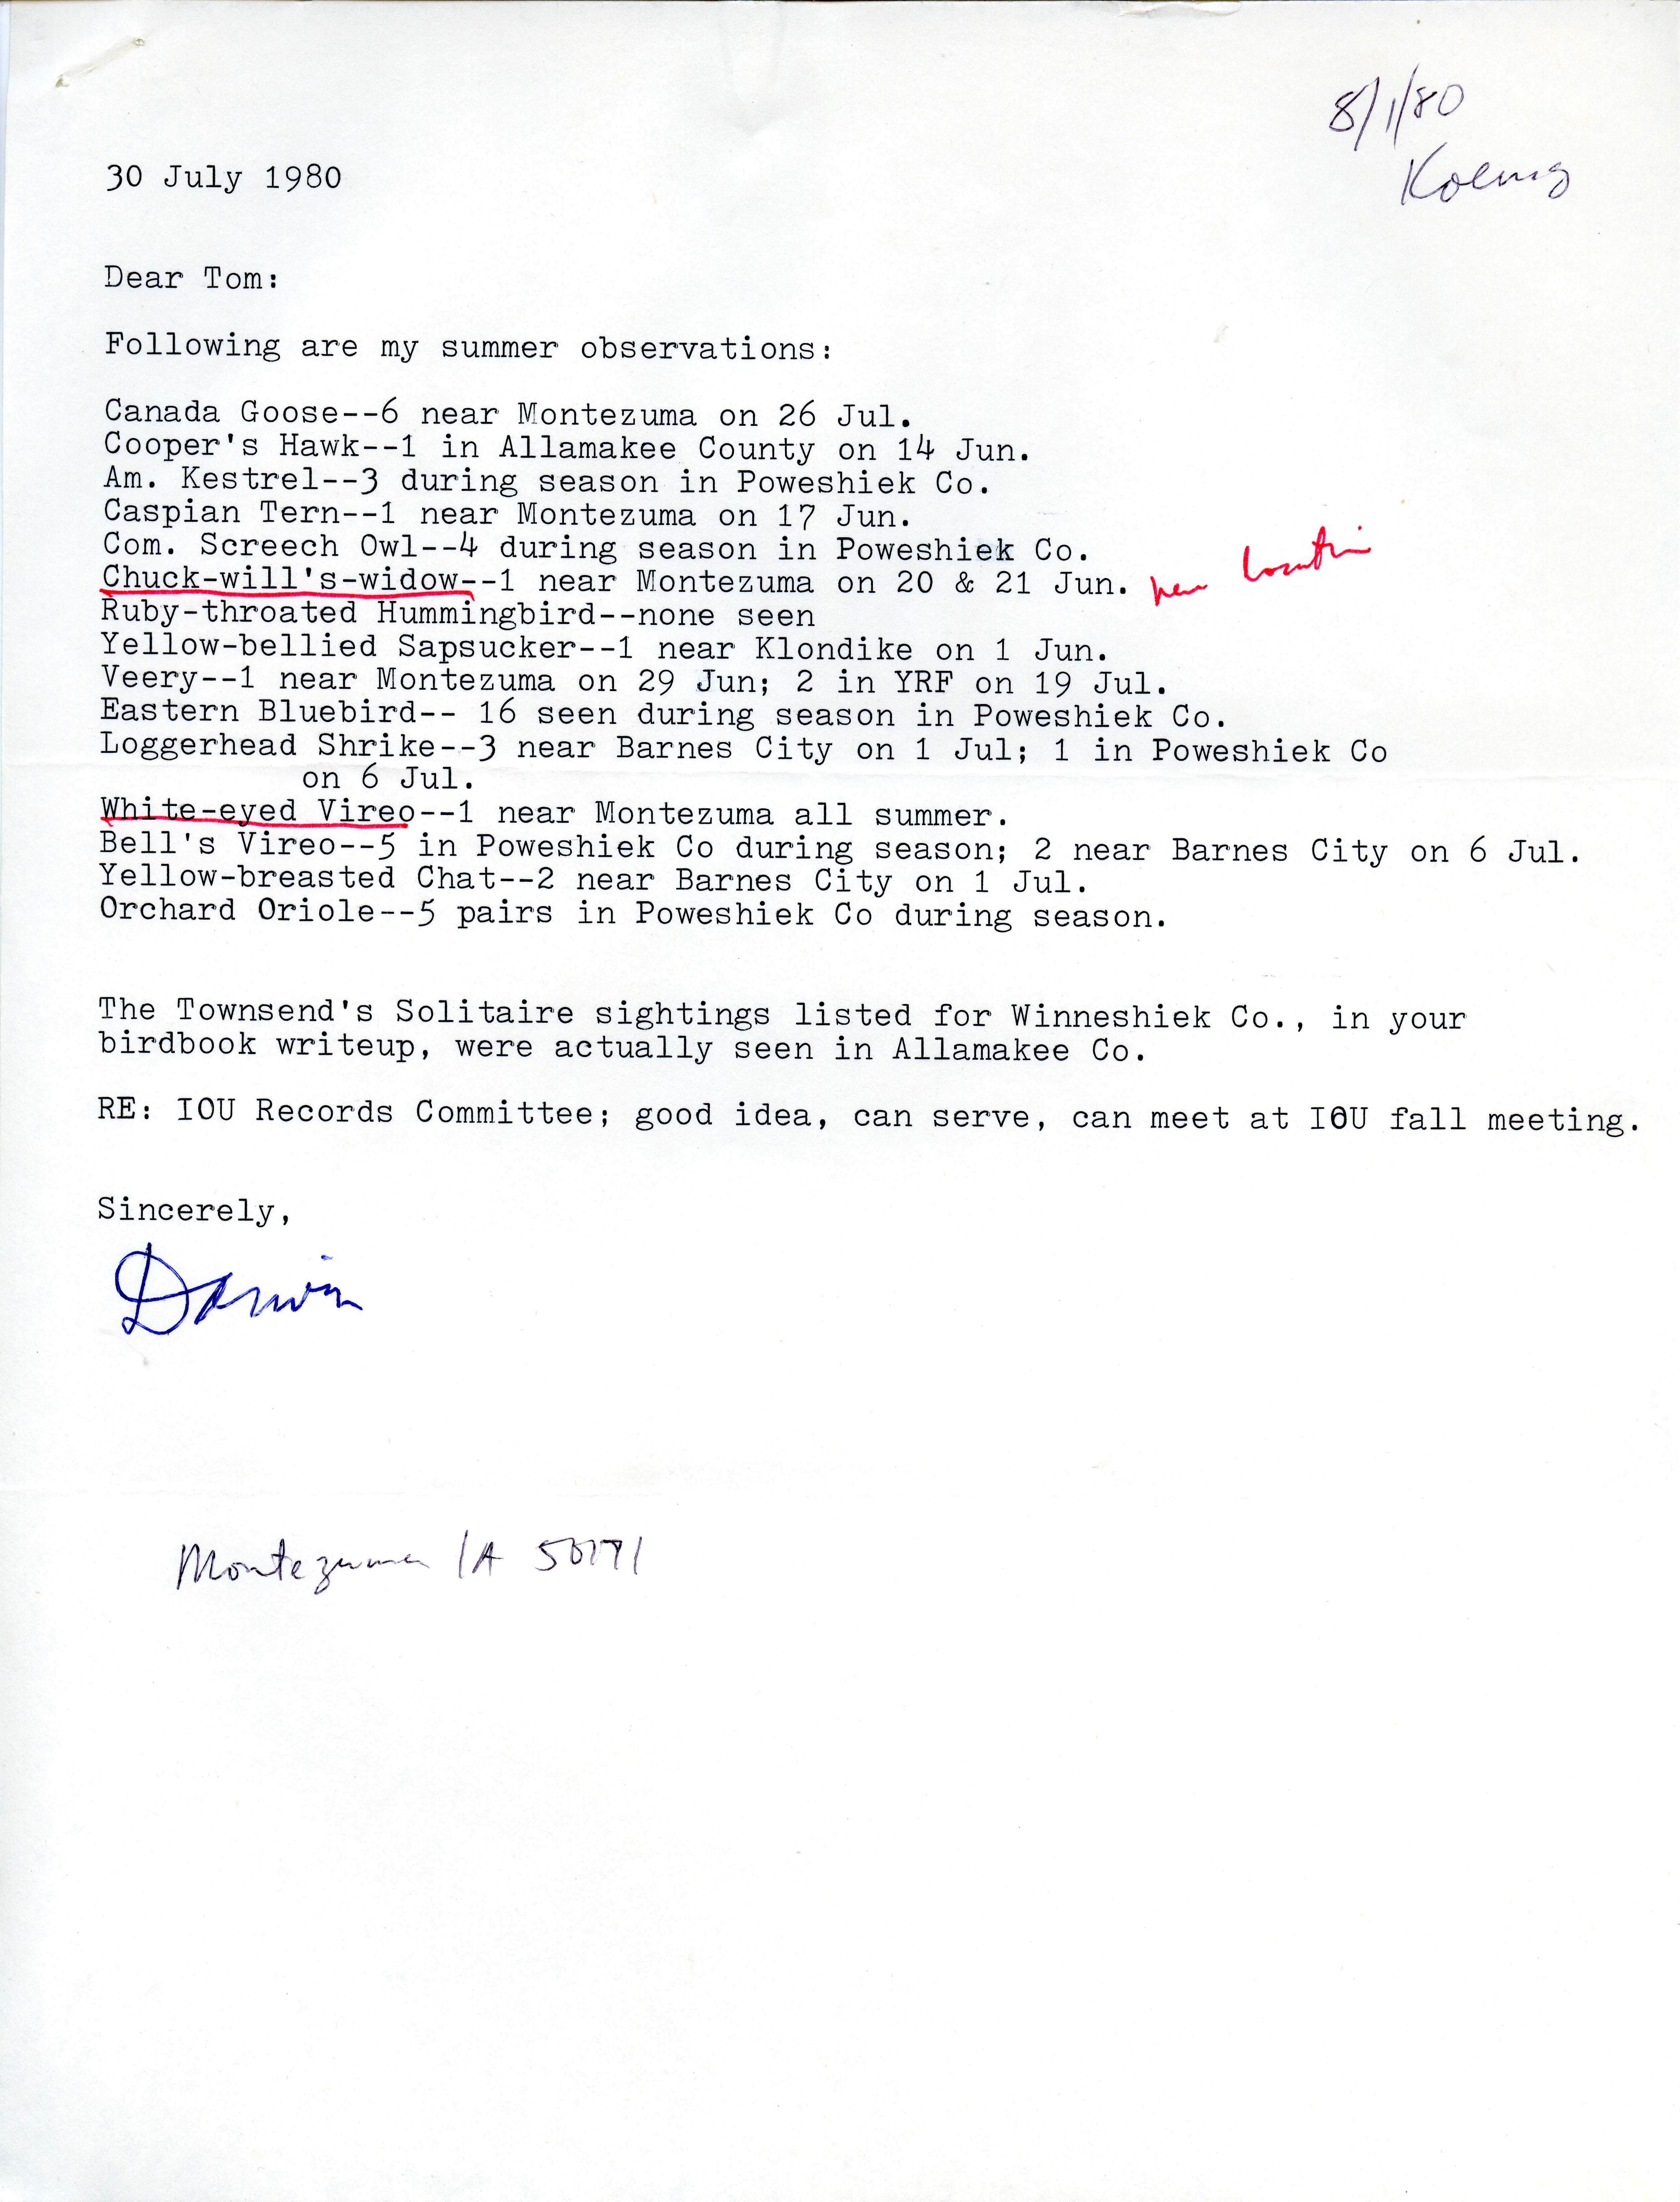 Darwin Koenig letter to Thomas H. Kent regarding bird sightings, July 30, 1980